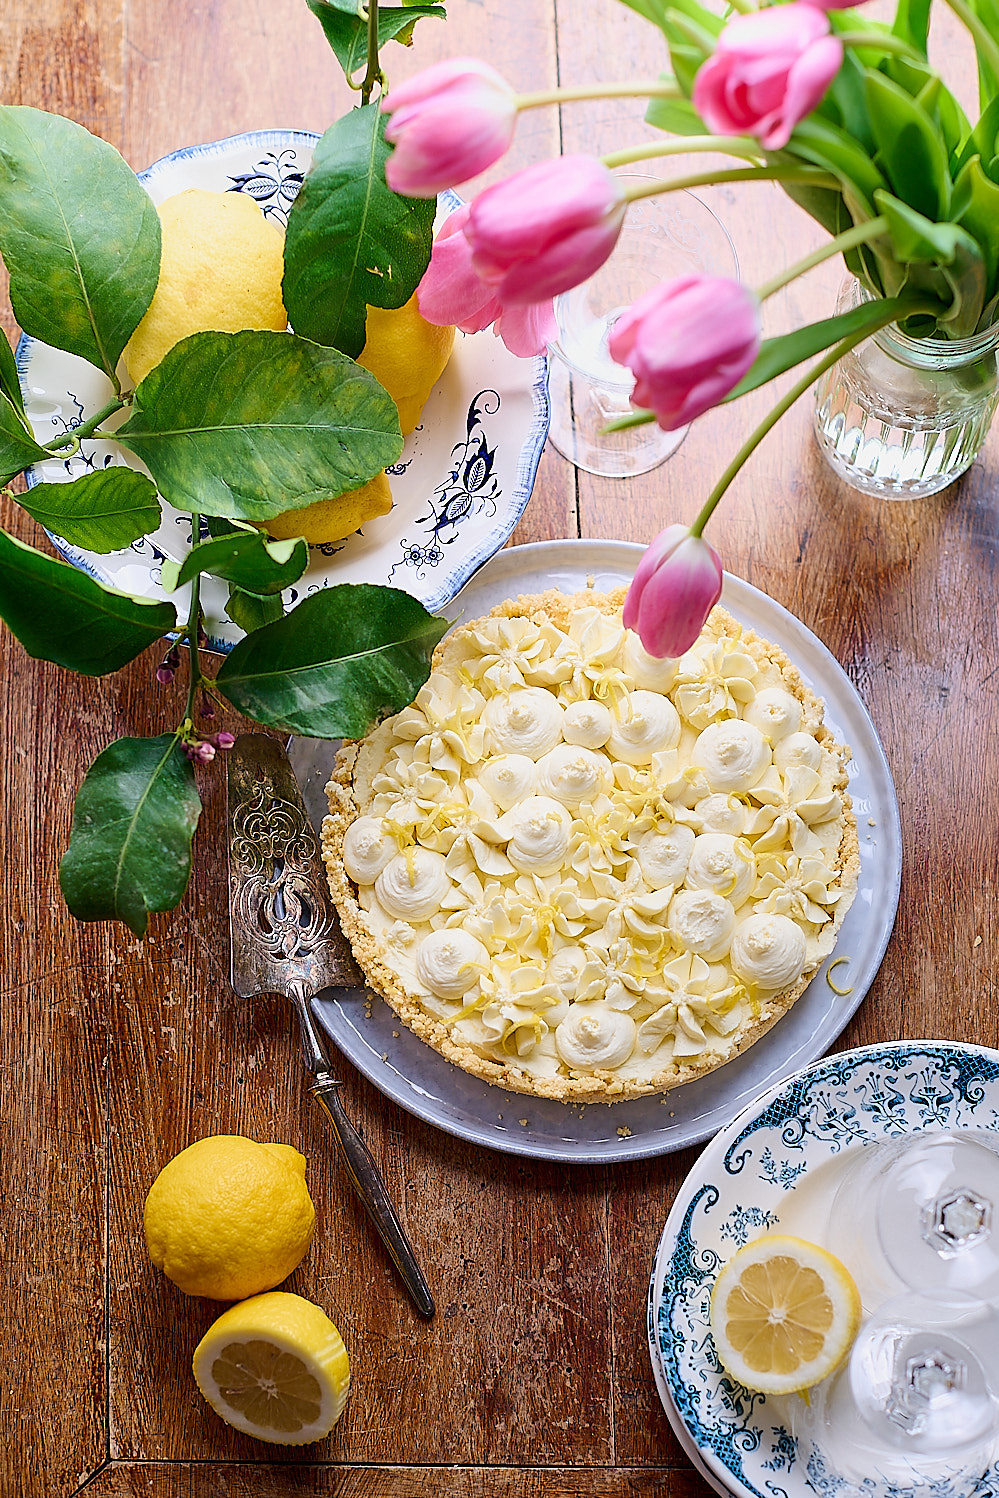 recette de Tarte au citron façon cheesecake sans cuisson de Vanessa cuisine